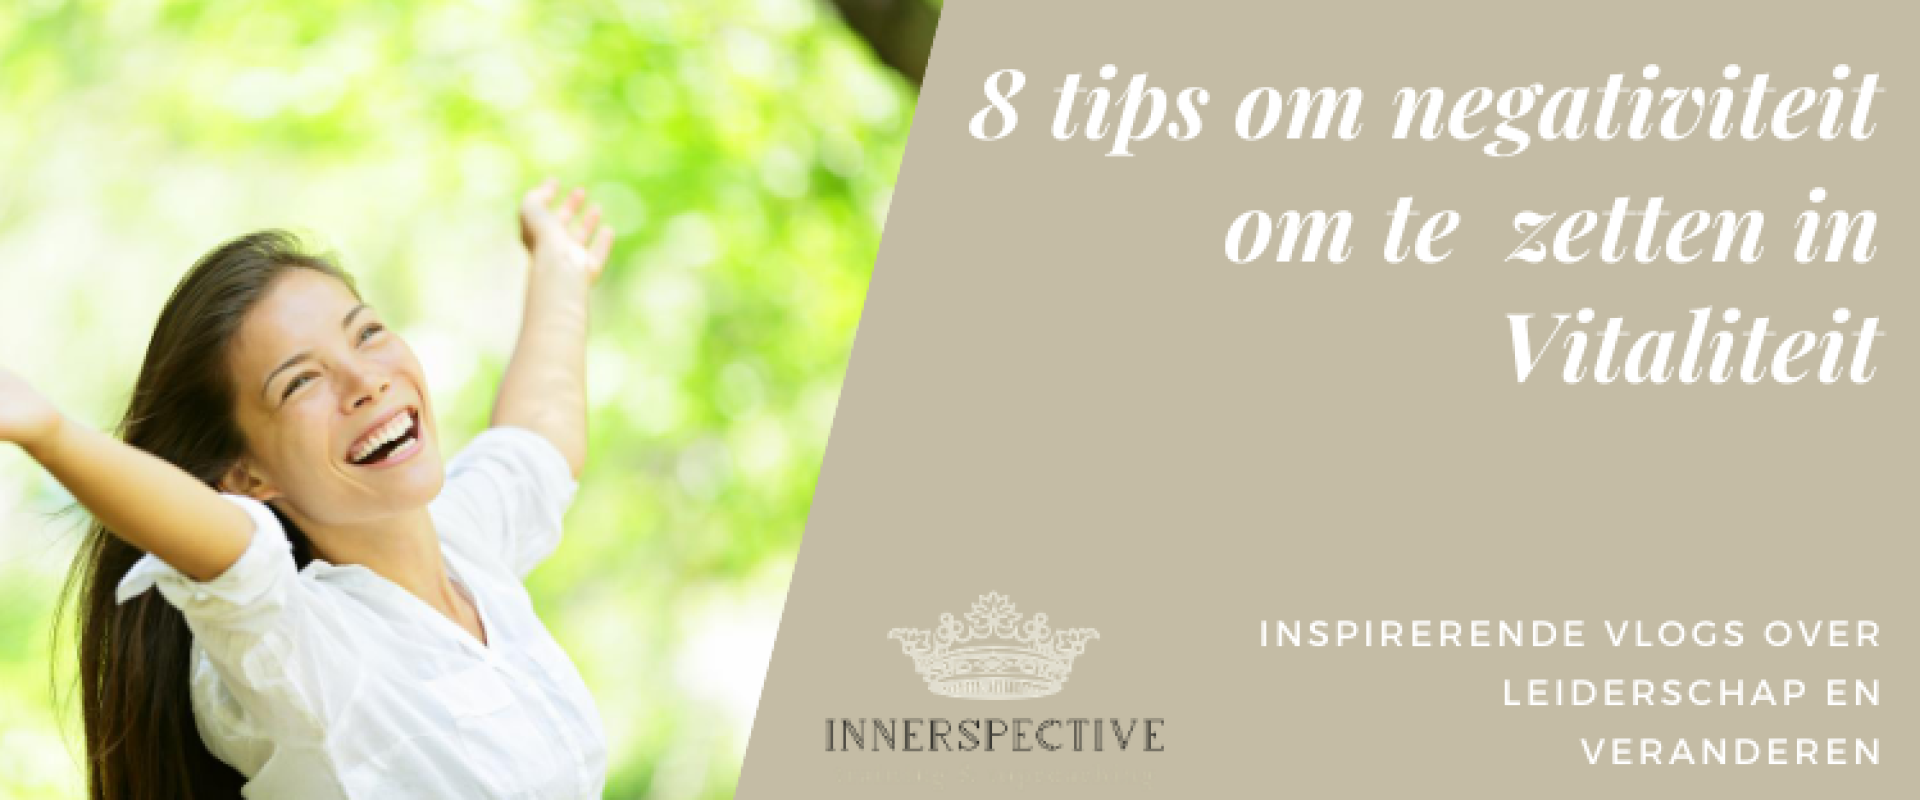 Vitaliteit tips: 8 tips om negativiteit om te zetten naar vitaliteit